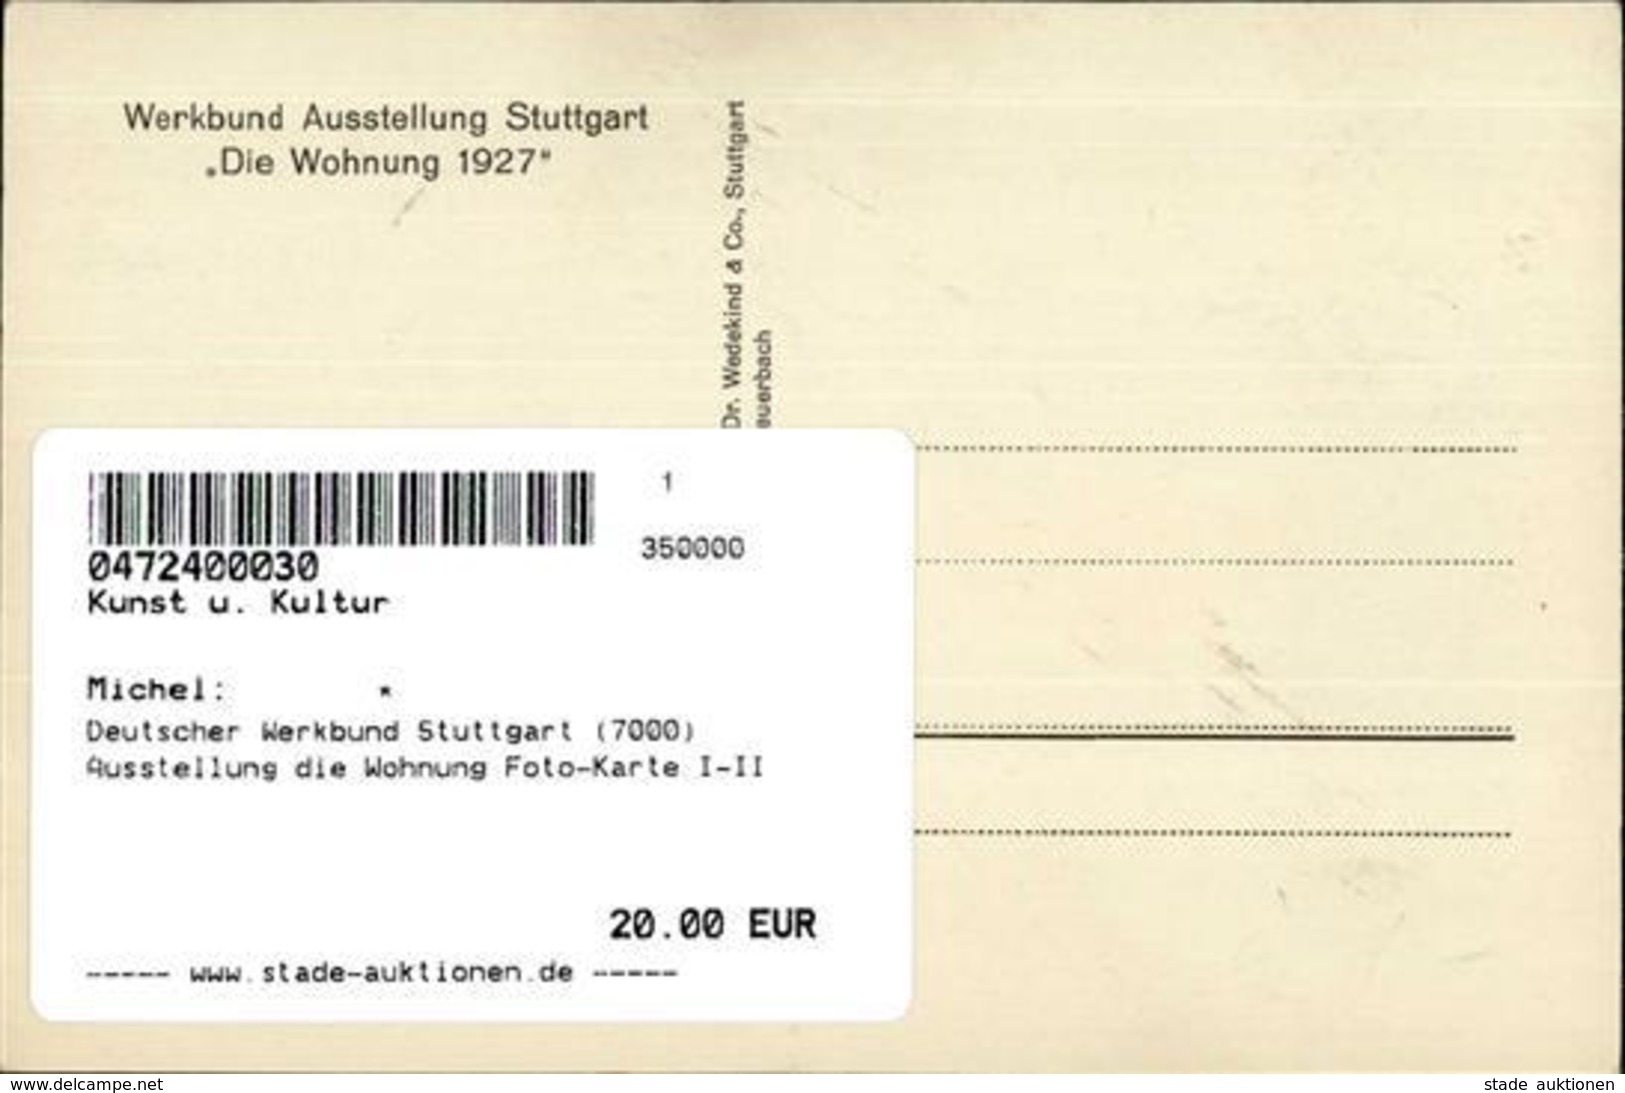 Bauhaus Deutscher Werkbund Stuttgart (7000) Ausstellung Die Wohnung Foto-Karte I-II Expo - Unclassified